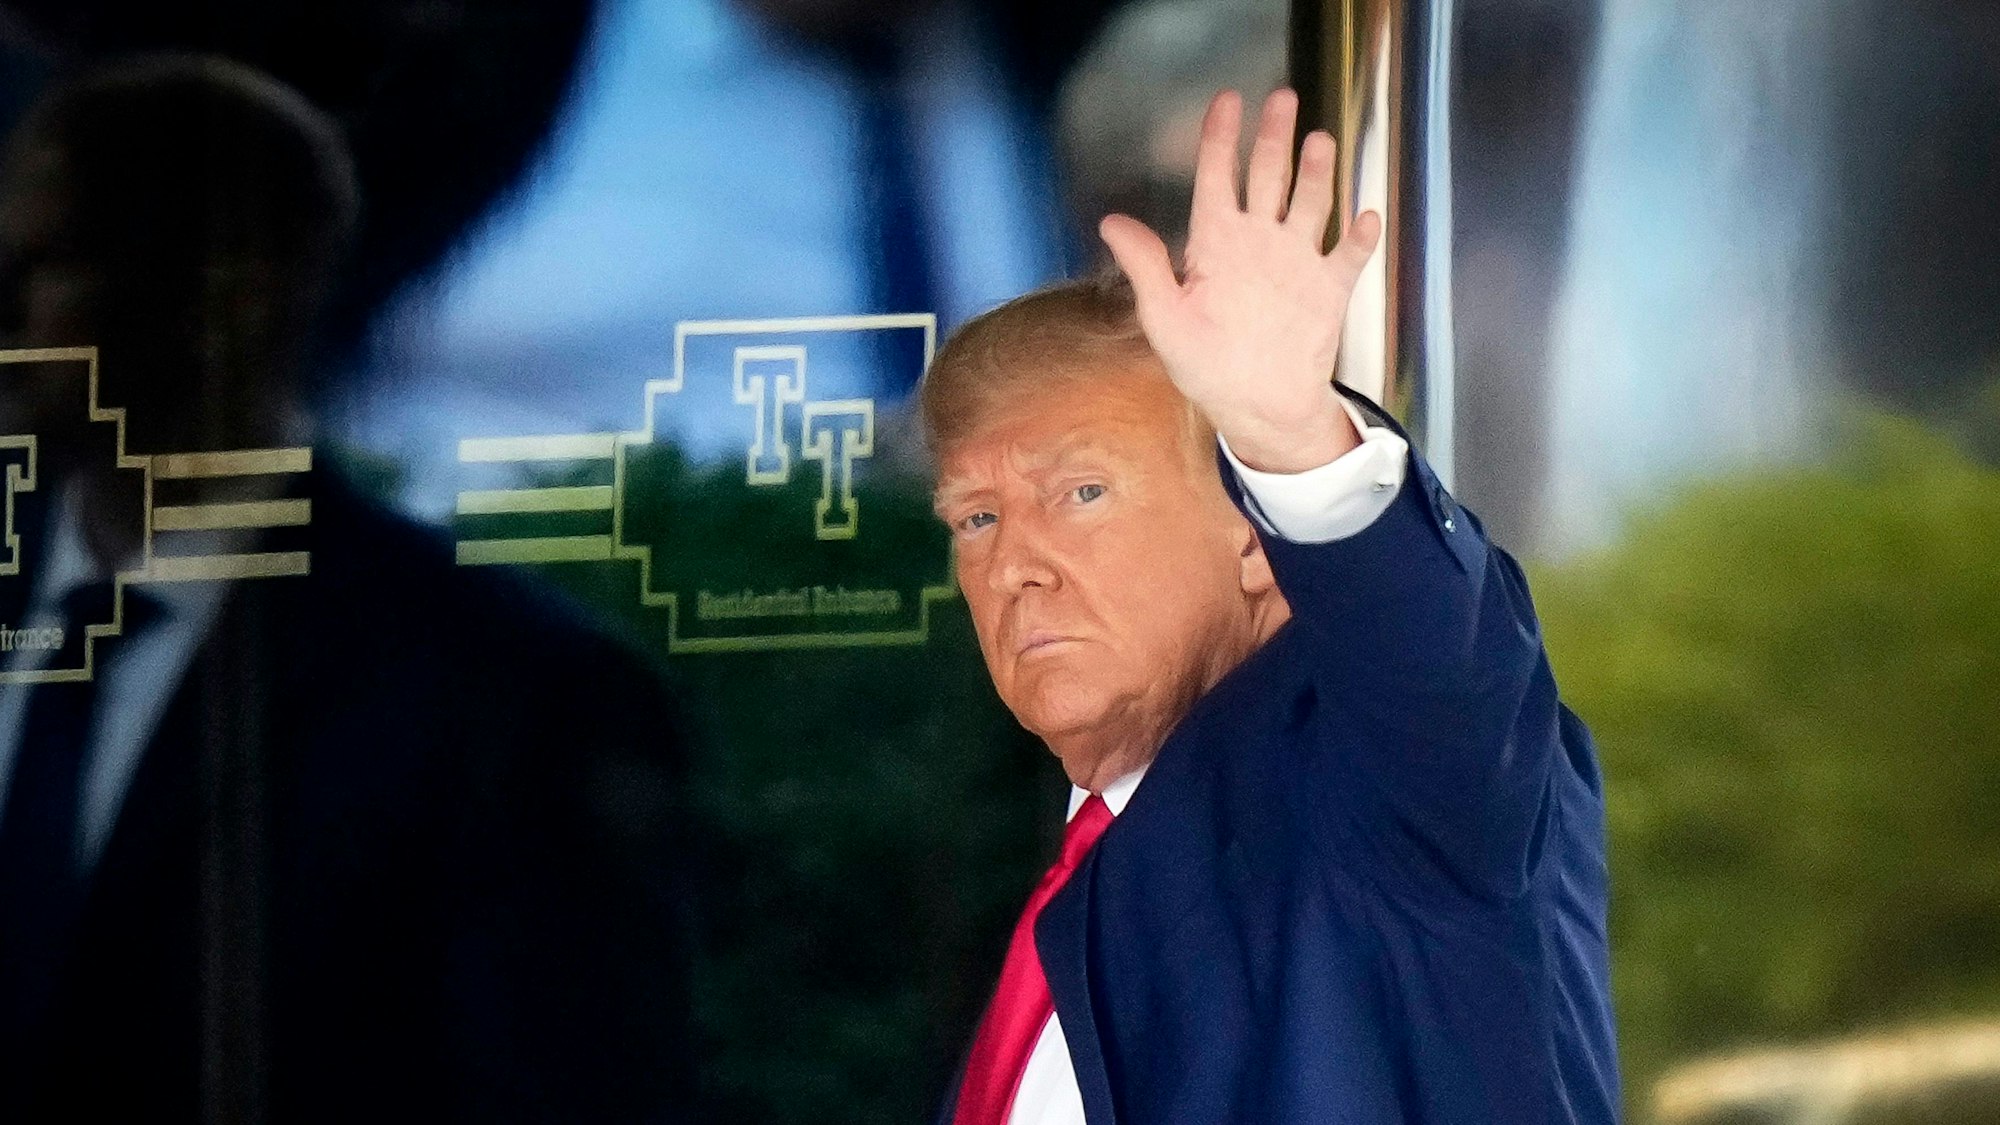 Donald Trump, ehemaliger Präsident der USA, kommt am Trump Tower in New York an. Trump ist vor seinem Termin zur Anklageverlesung in New York angekommen.